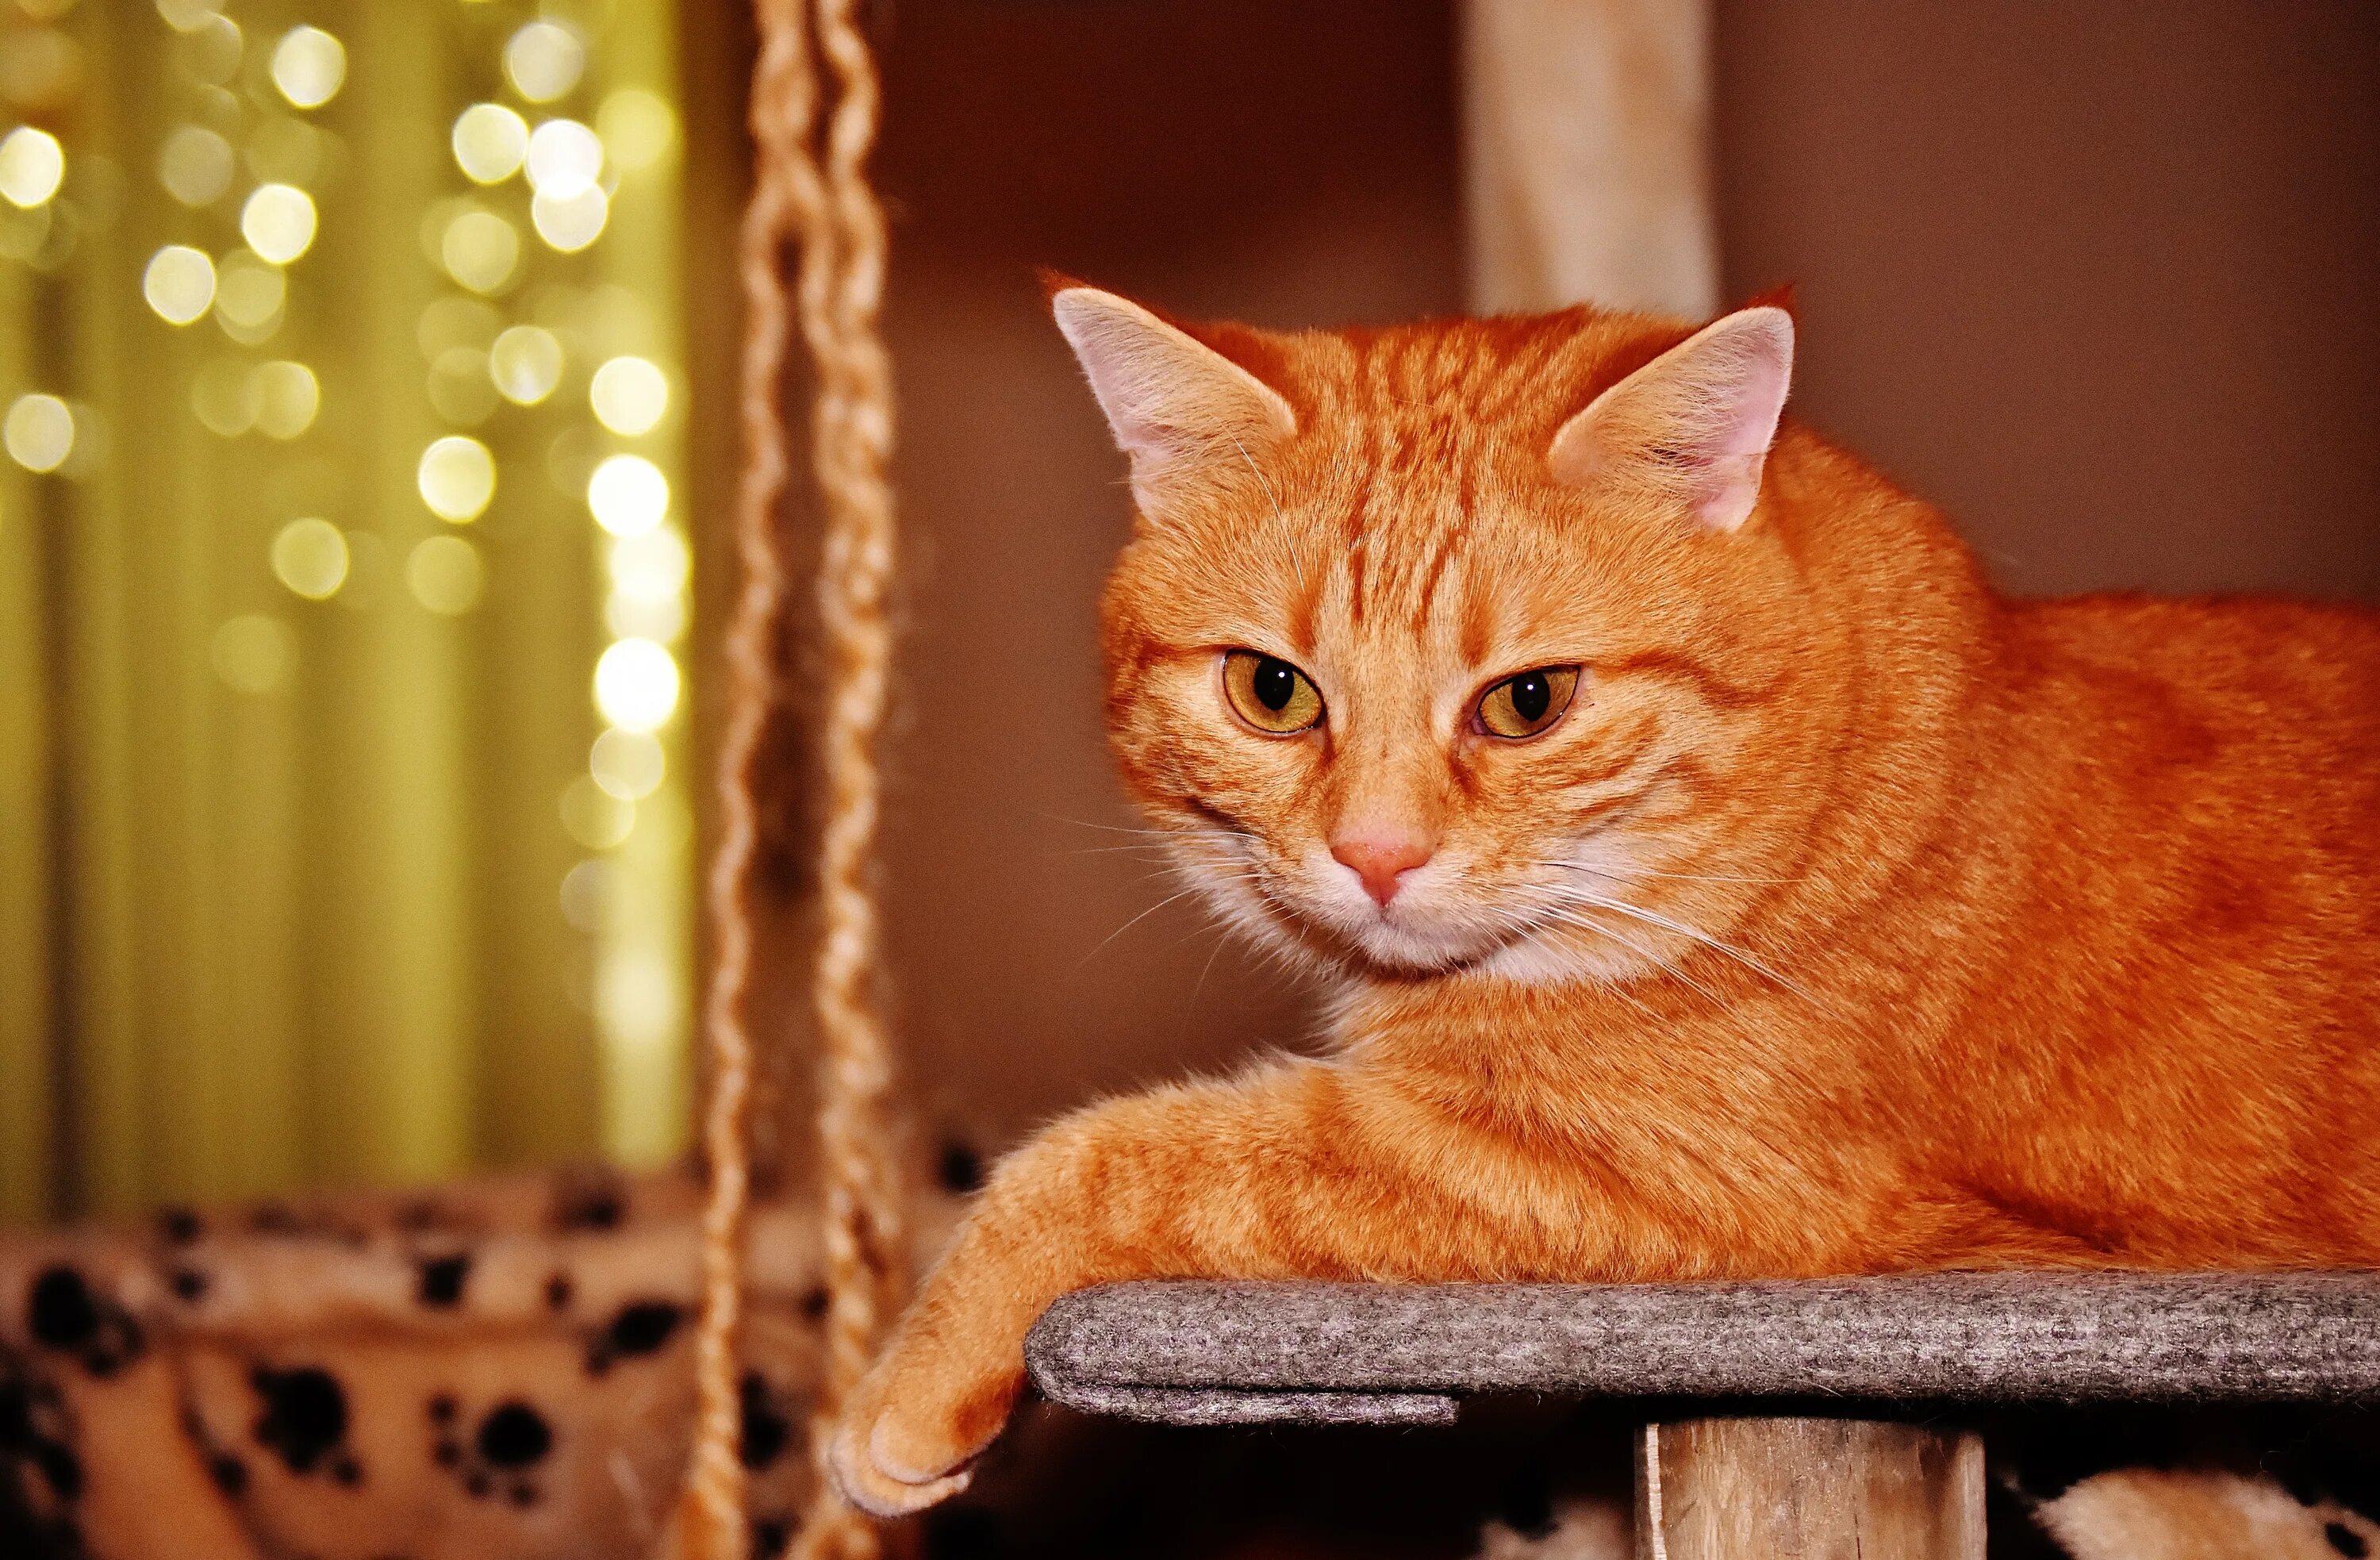 Cats me red. Макрелевый табби рыжий. Британский короткошерстный кот рыжий. Красный табби макрель. Европейская короткошерстная табби рыжий.